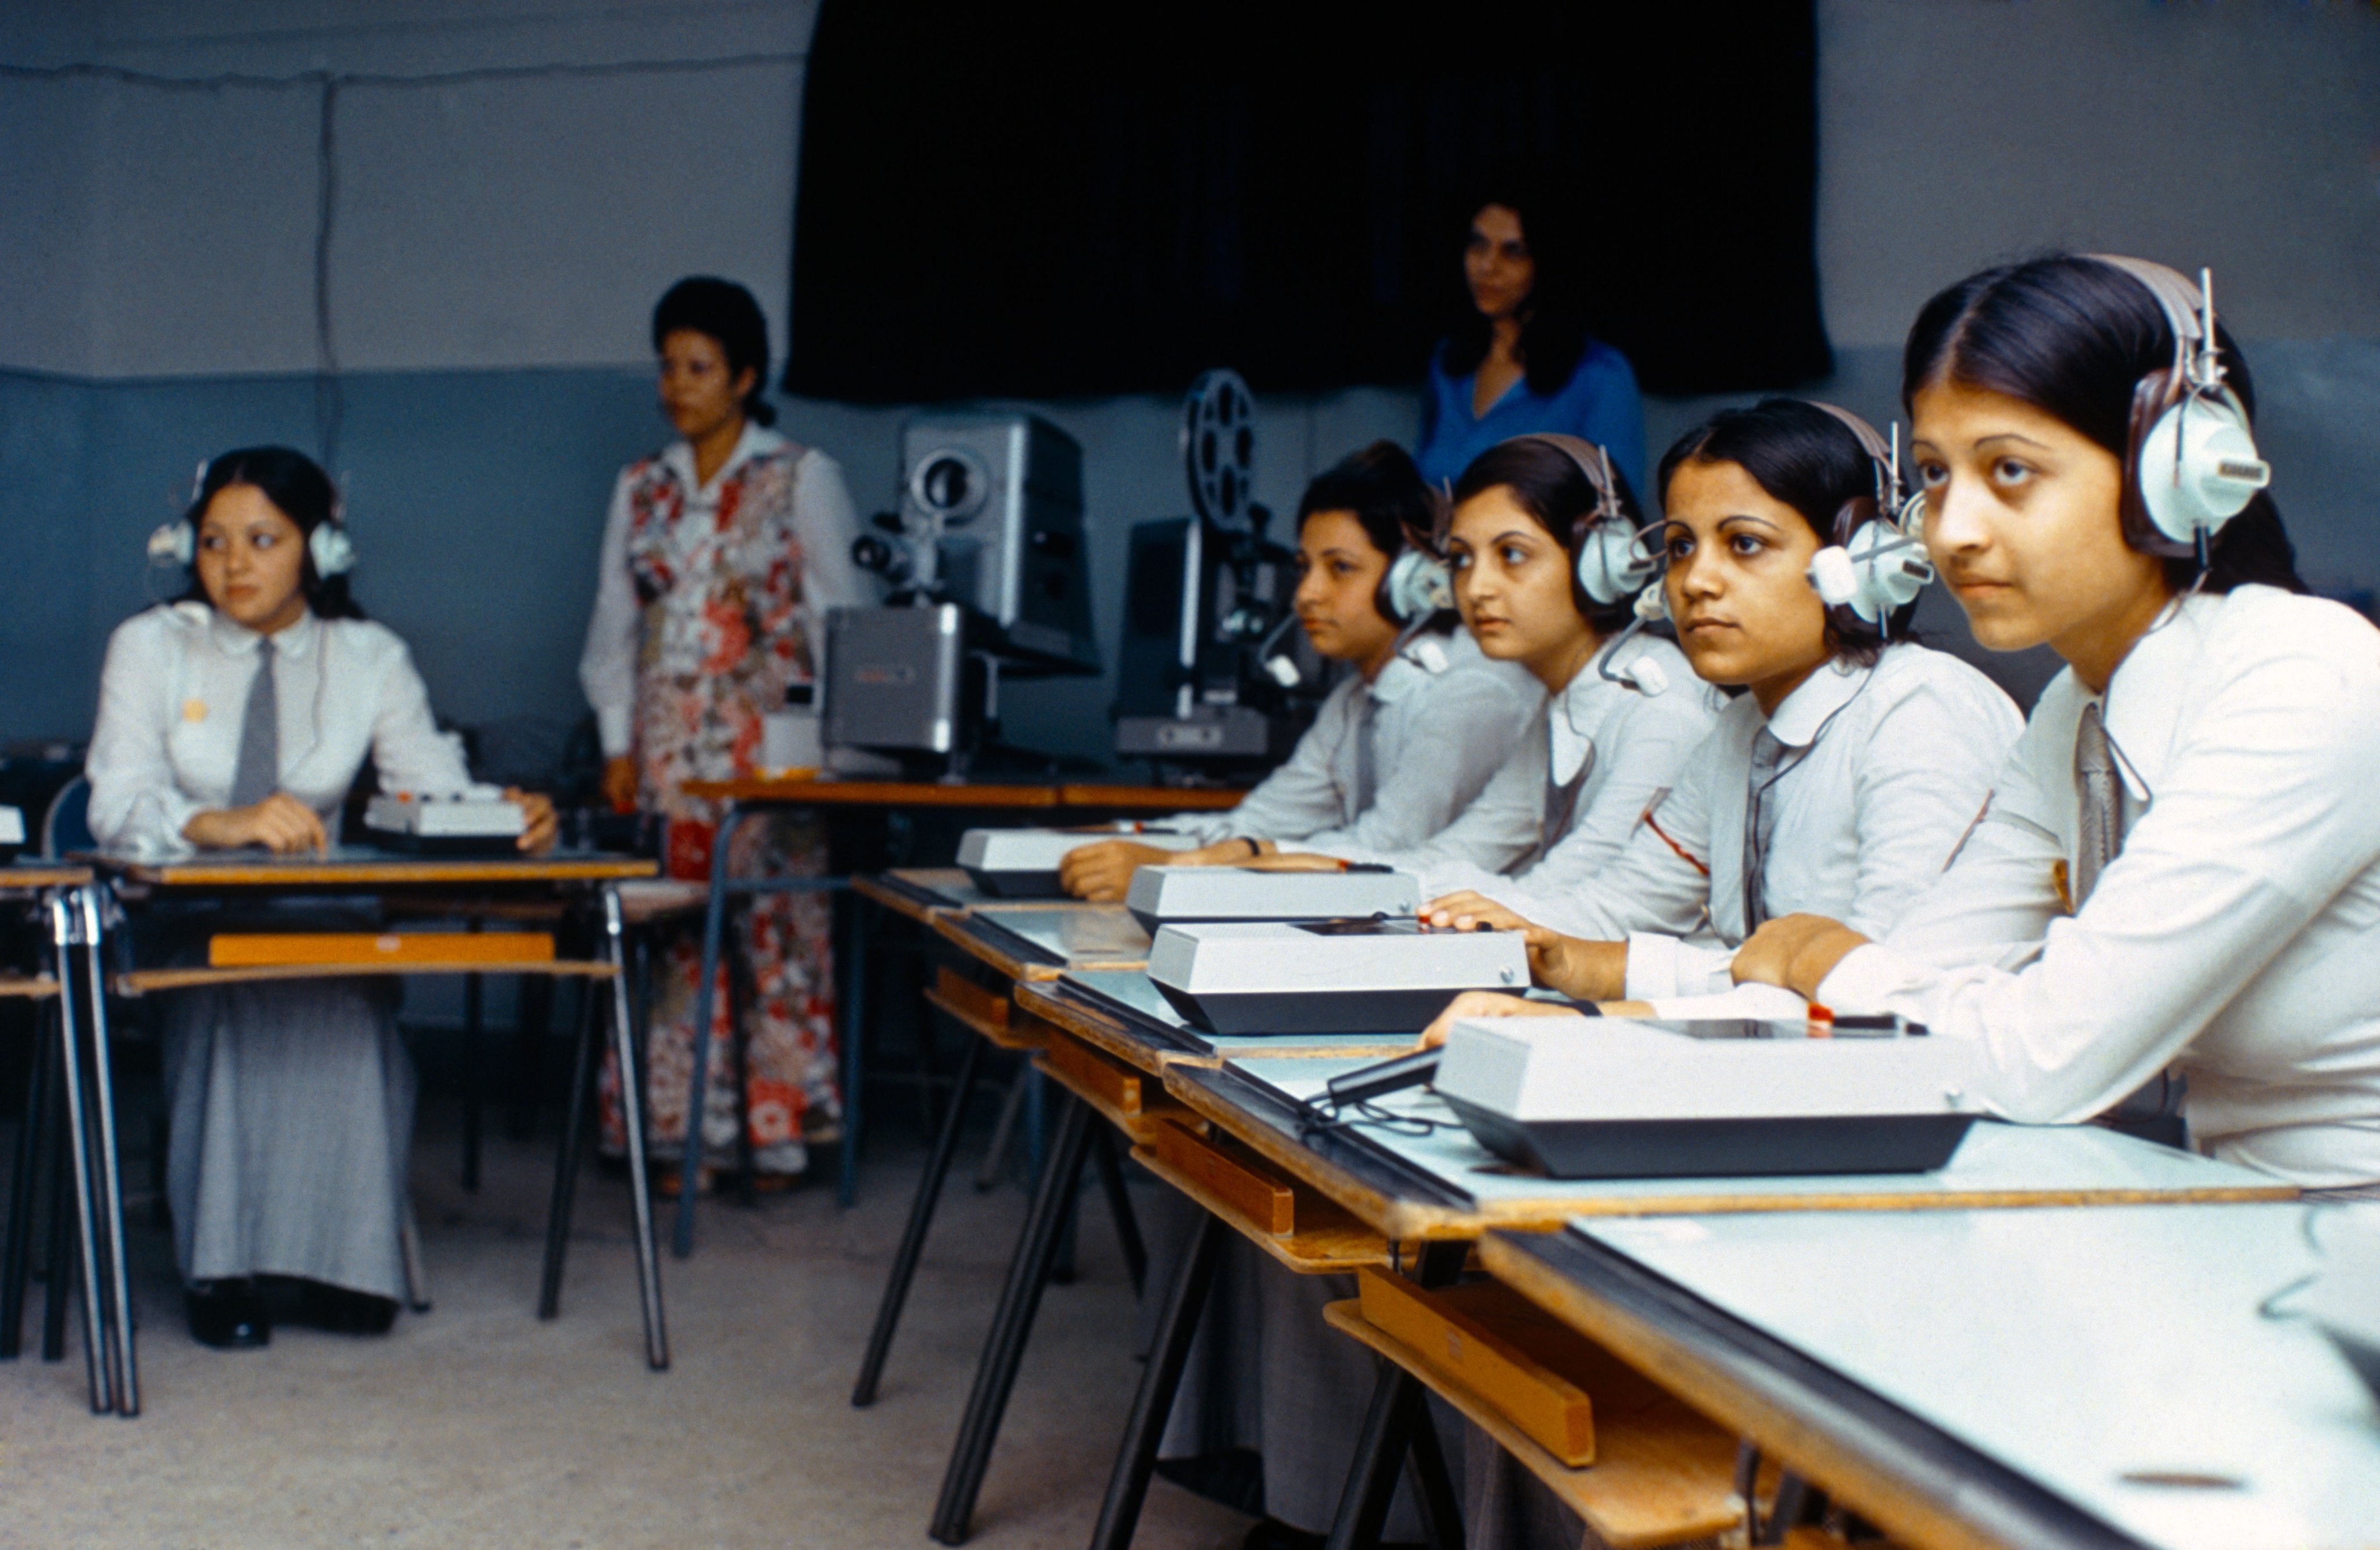 شاهد: صورة نادرة لطالبات في مدرسة بجدة.. والكشف عن تاريخ التقاطها